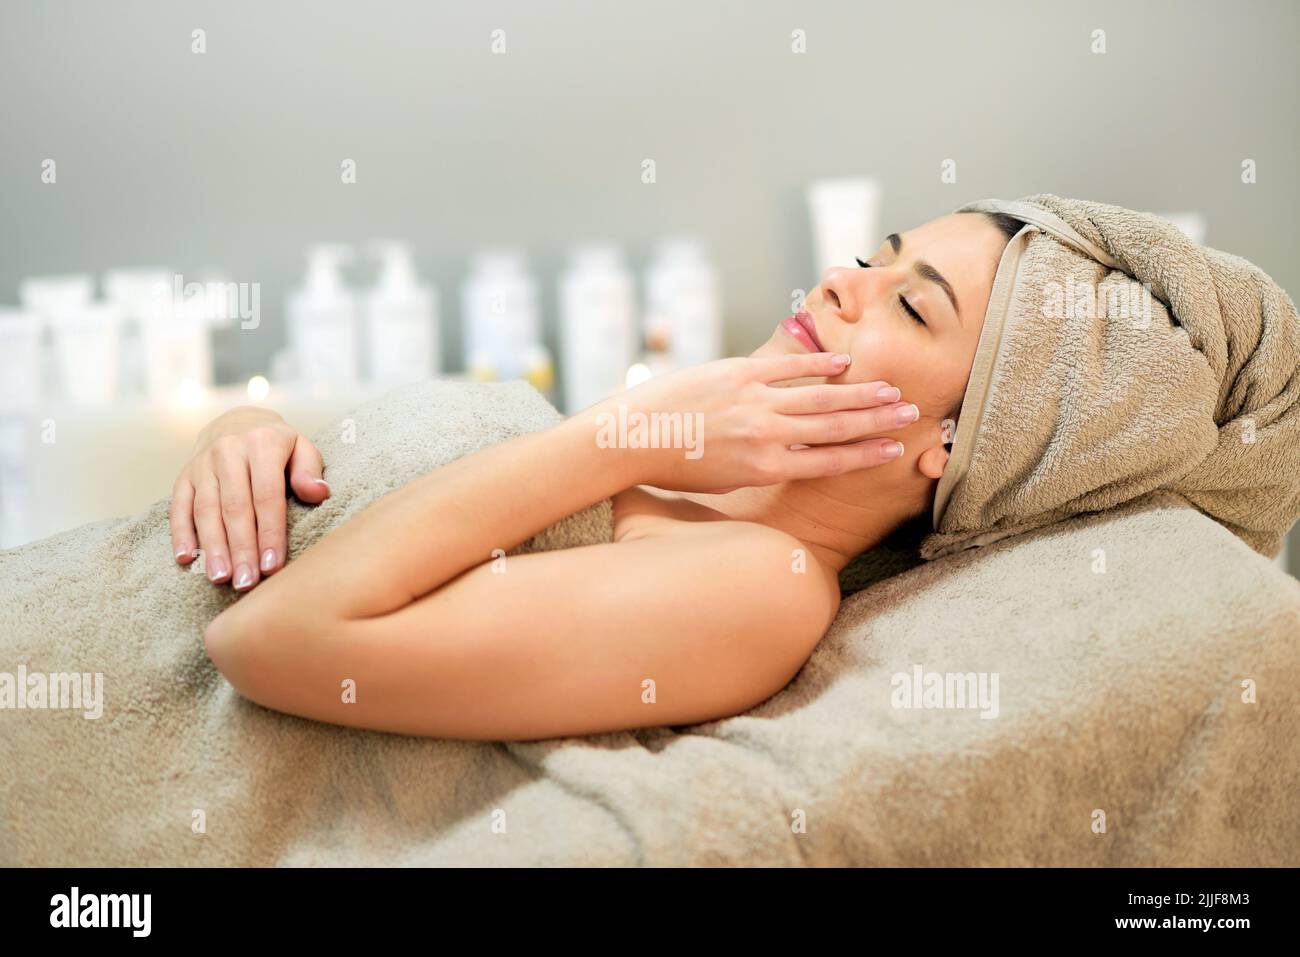 Vista lateral de una mujer relajada envuelta en una toalla tocando la mejilla mientras se acuesta en el sofá durante el procedimiento de spa en el salón Foto de stock